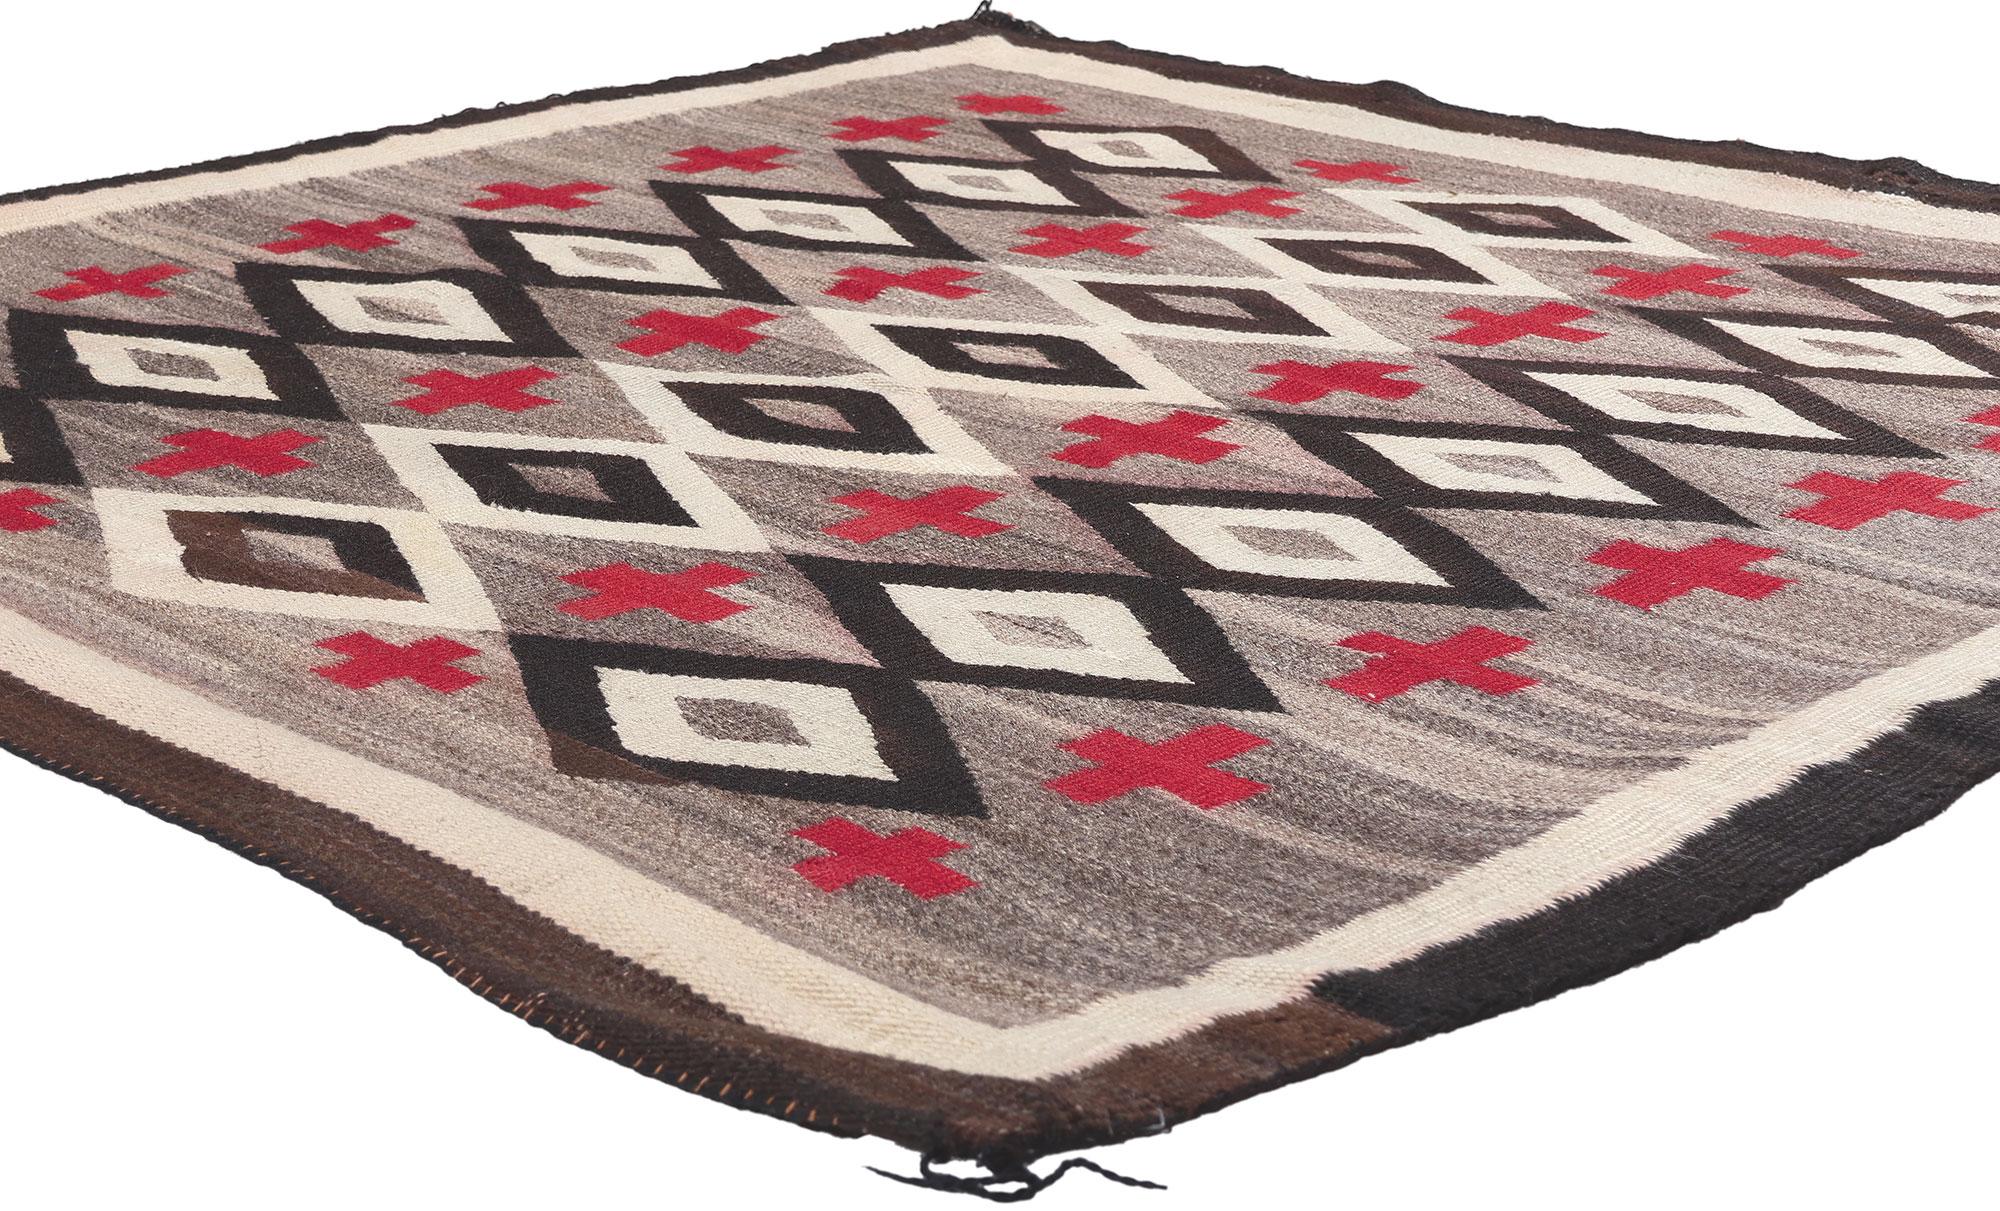 78559 Antiker Ganado Navajo-Teppich, 05'01 x 05'00. 
Dieser handgewebte antike Navajo Ganado-Teppich, der die Kultur der amerikanischen Ureinwohner mit unglaublichen Details und Texturen widerspiegelt, ist eine fesselnde Vision gewebter Schönheit.